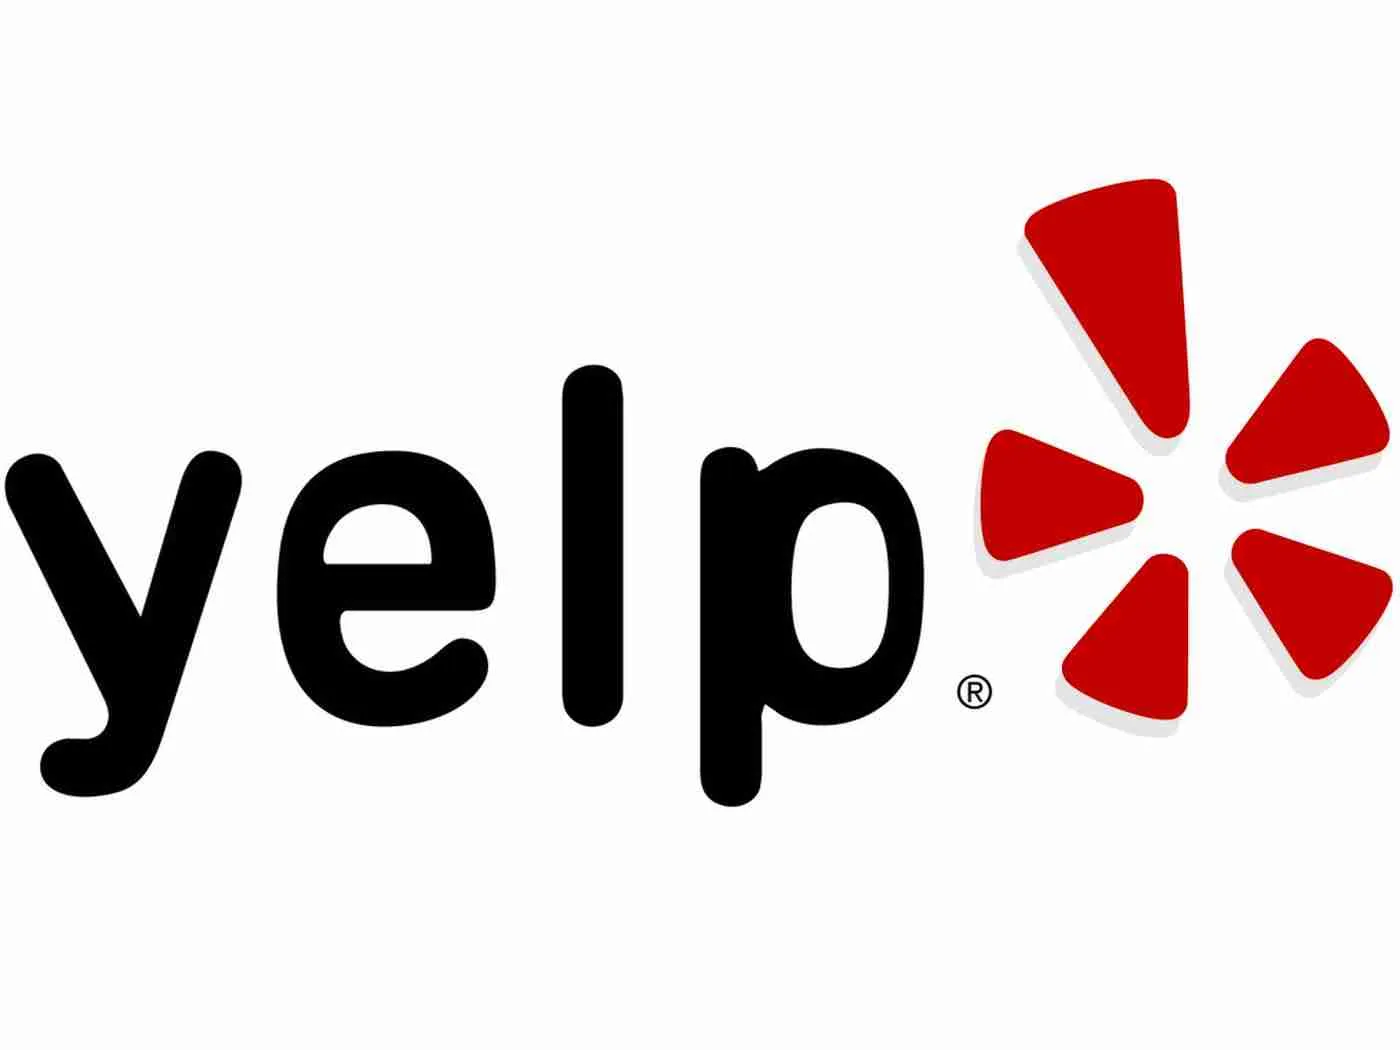 yelp-logo-2.webp